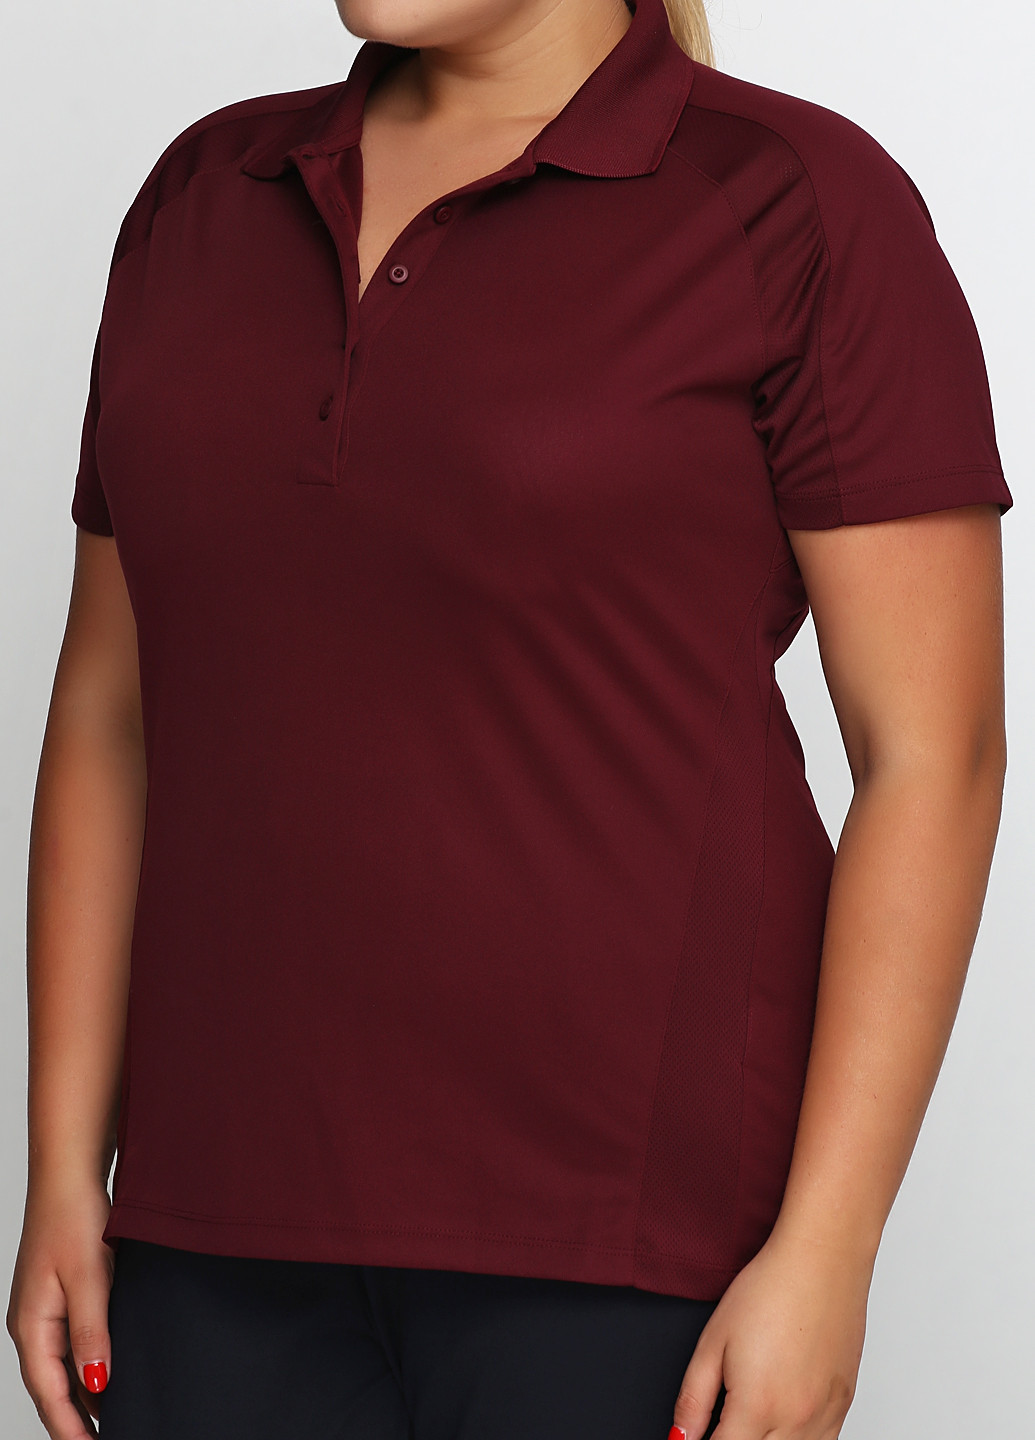 Бордовая женская футболка-поло SPORT TEK однотонная